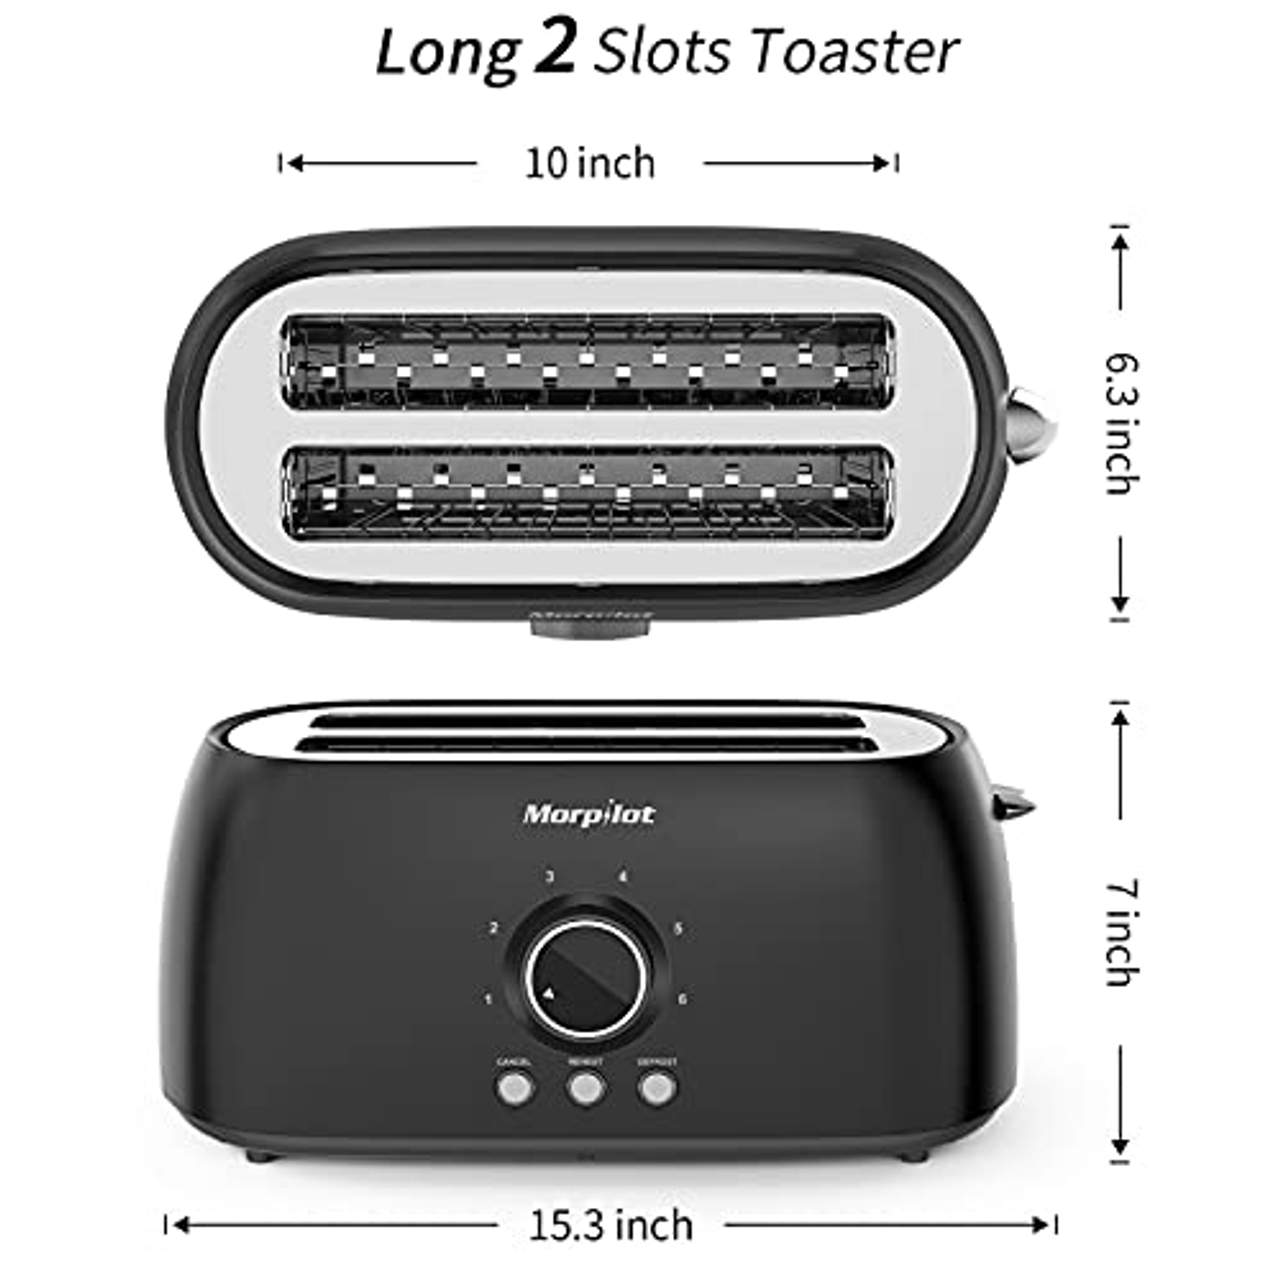 Morpilot Toaster 4 Scheiben Langschlitztoaster Edelstahl Langschlitztoaster